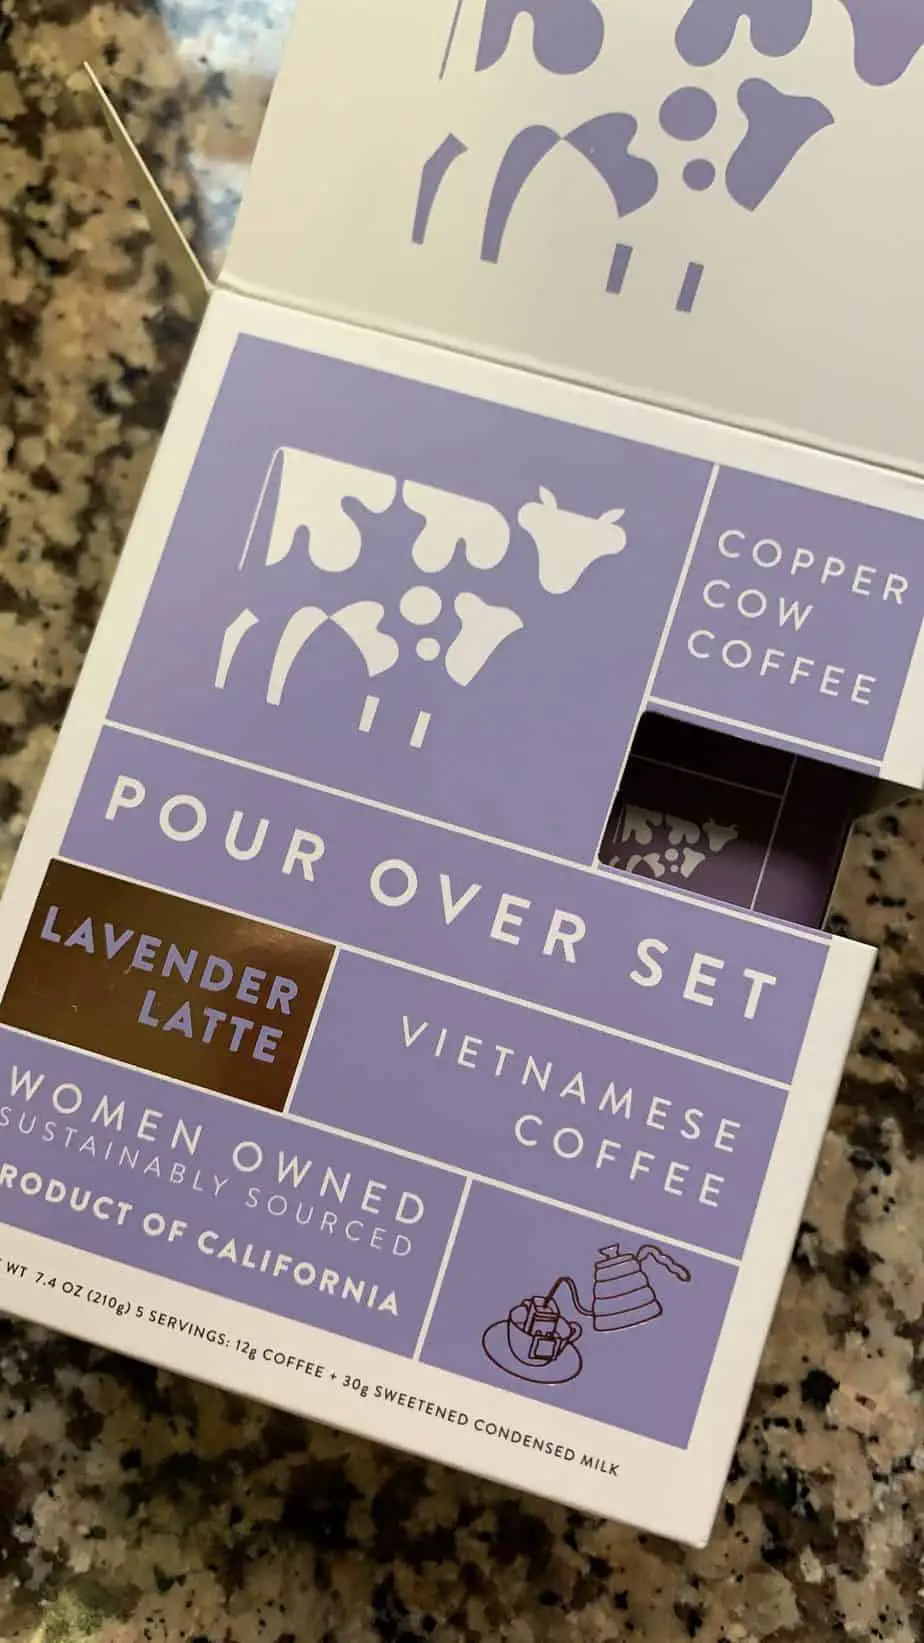 copper cow coffee lavender latte pour over set